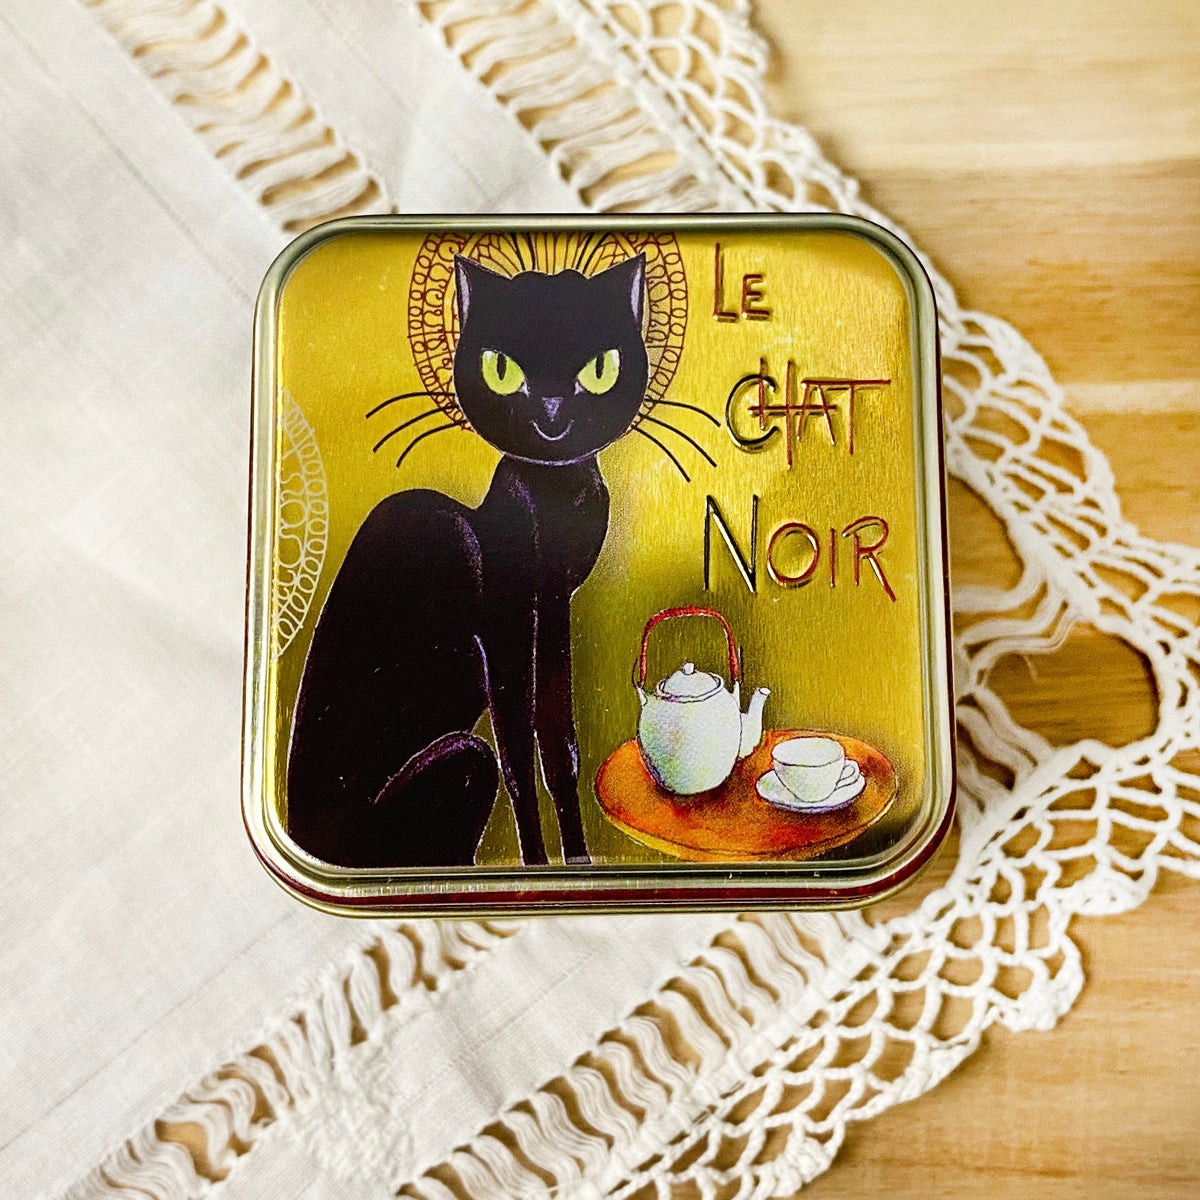 Le Chat Noir Tea Tin by Plum Deluxe Tea